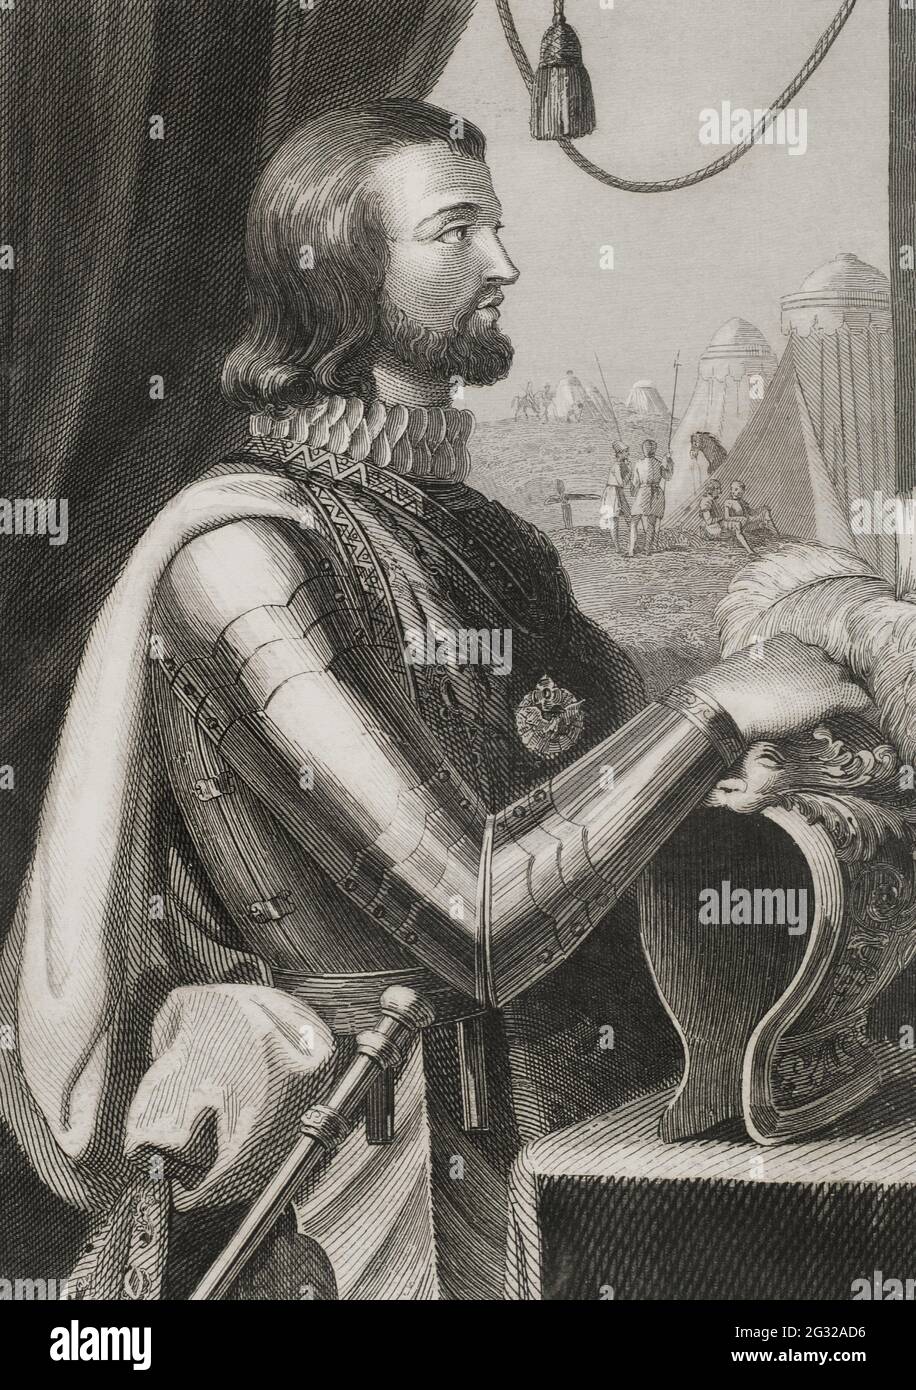 Johannes I. von Kastilien (1358-1390). König von Kastilien von 1379 bis 1390. Hochformat. Stich von Antonio Roca. Las Glorias Nacionales, 1853. Stockfoto